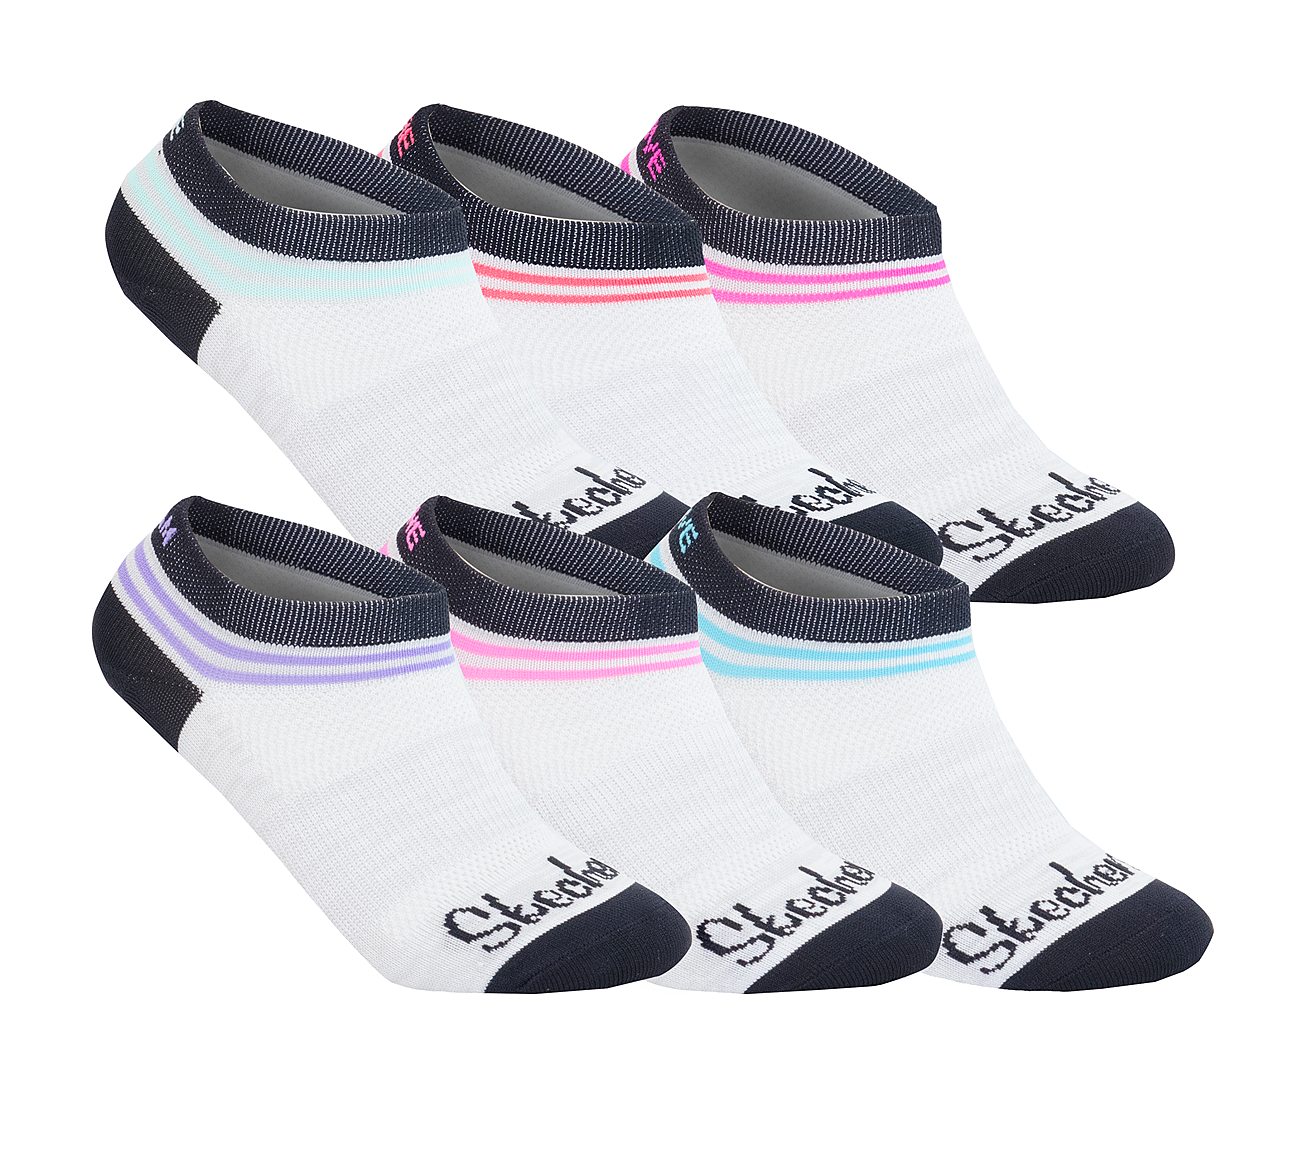 I Love Yorkie Novelty Socks For Women /& Men One Size Gifts